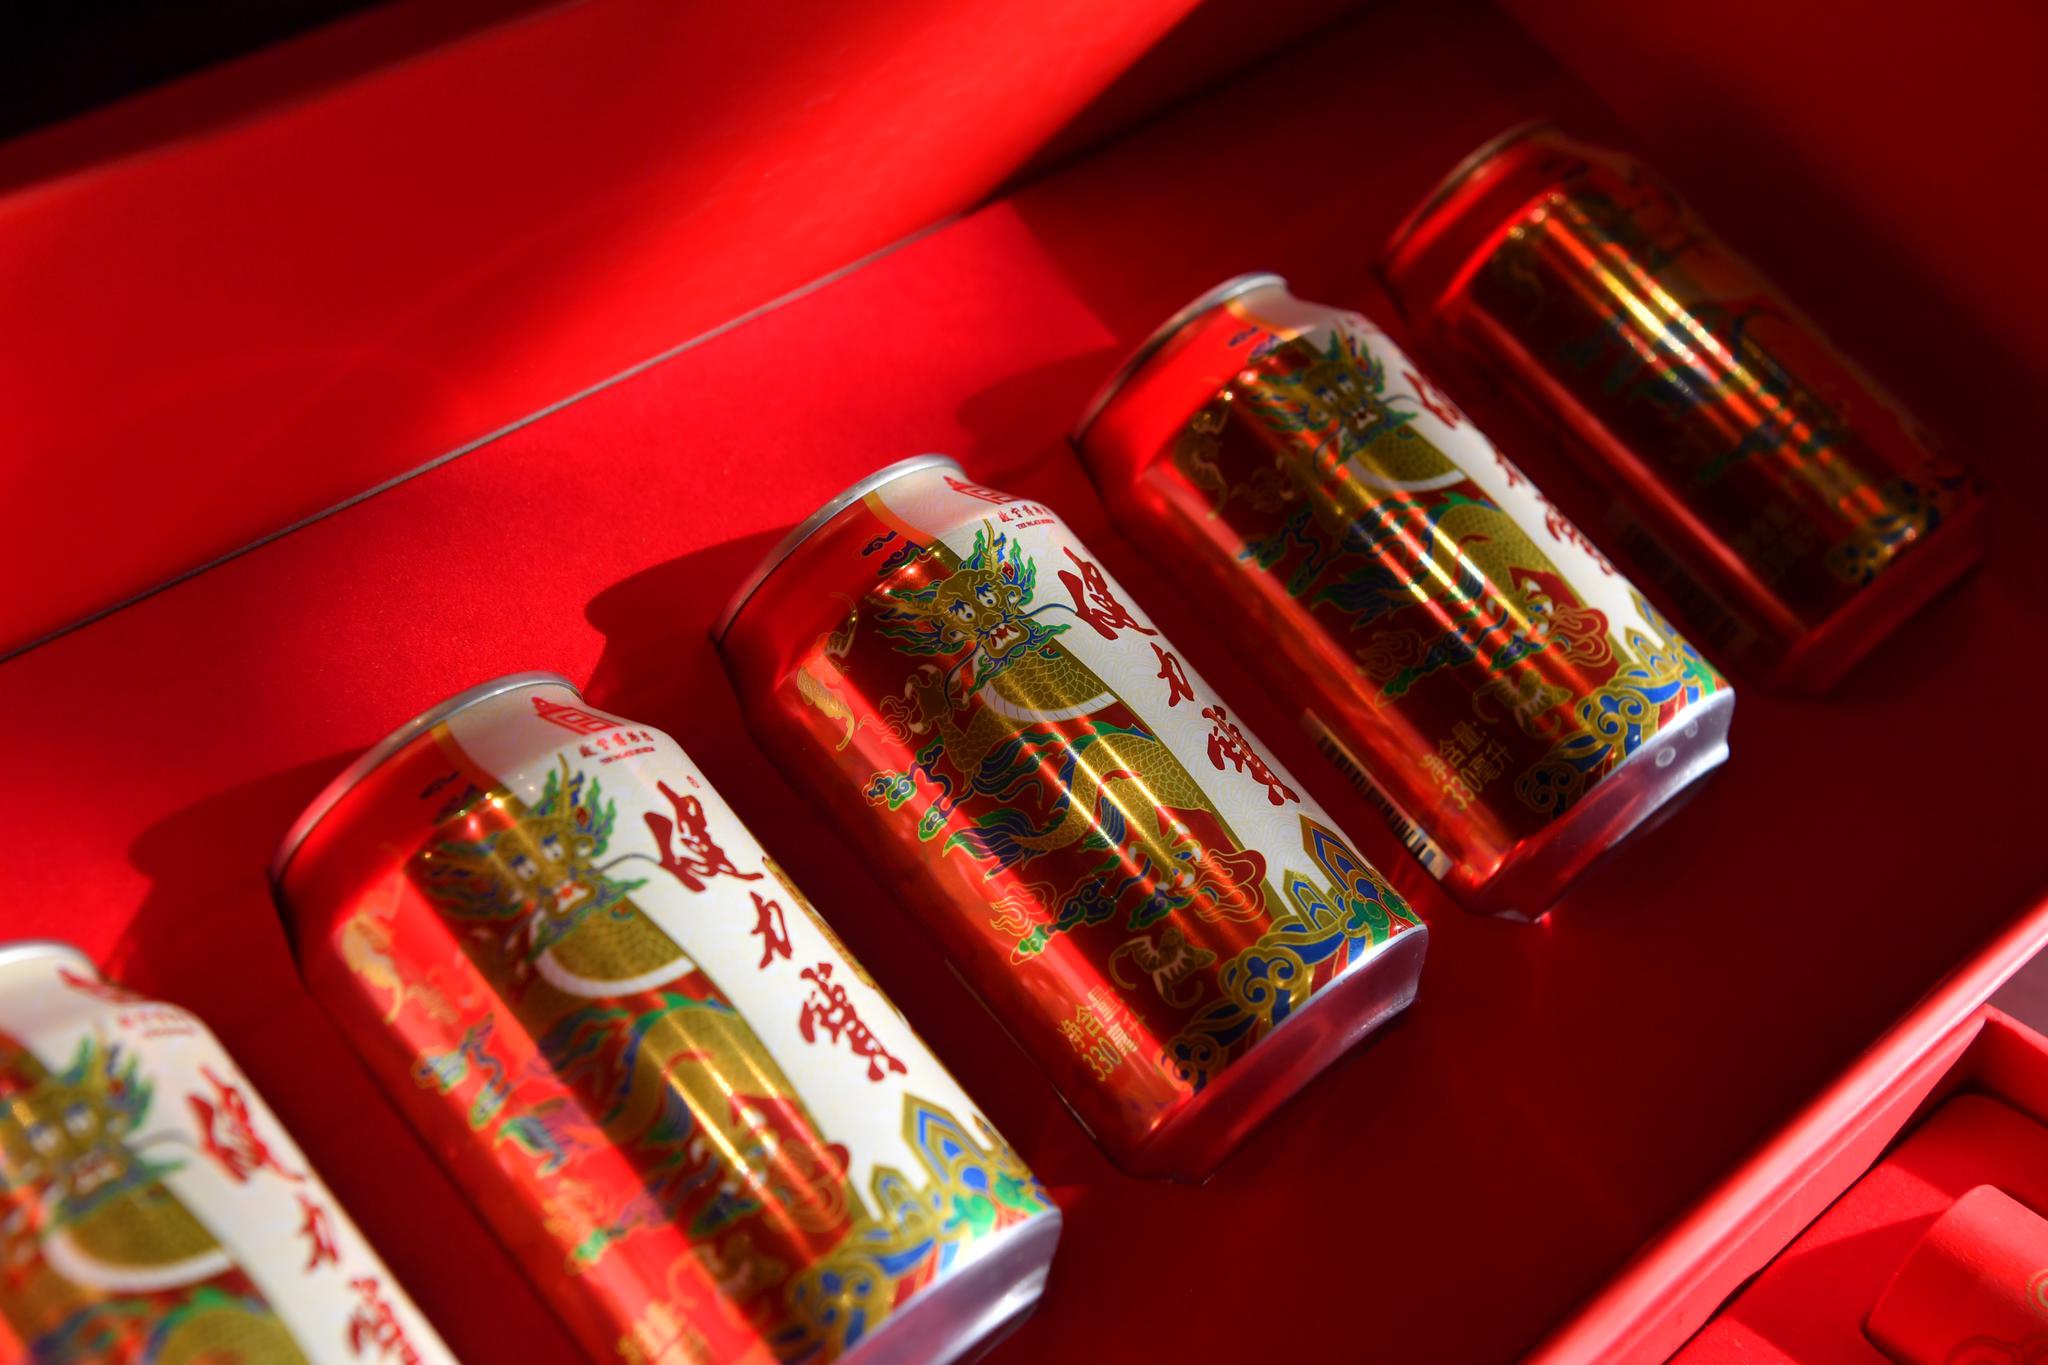 故宫博物馆联合健力宝推出文创新品——“祥龙纳吉罐”